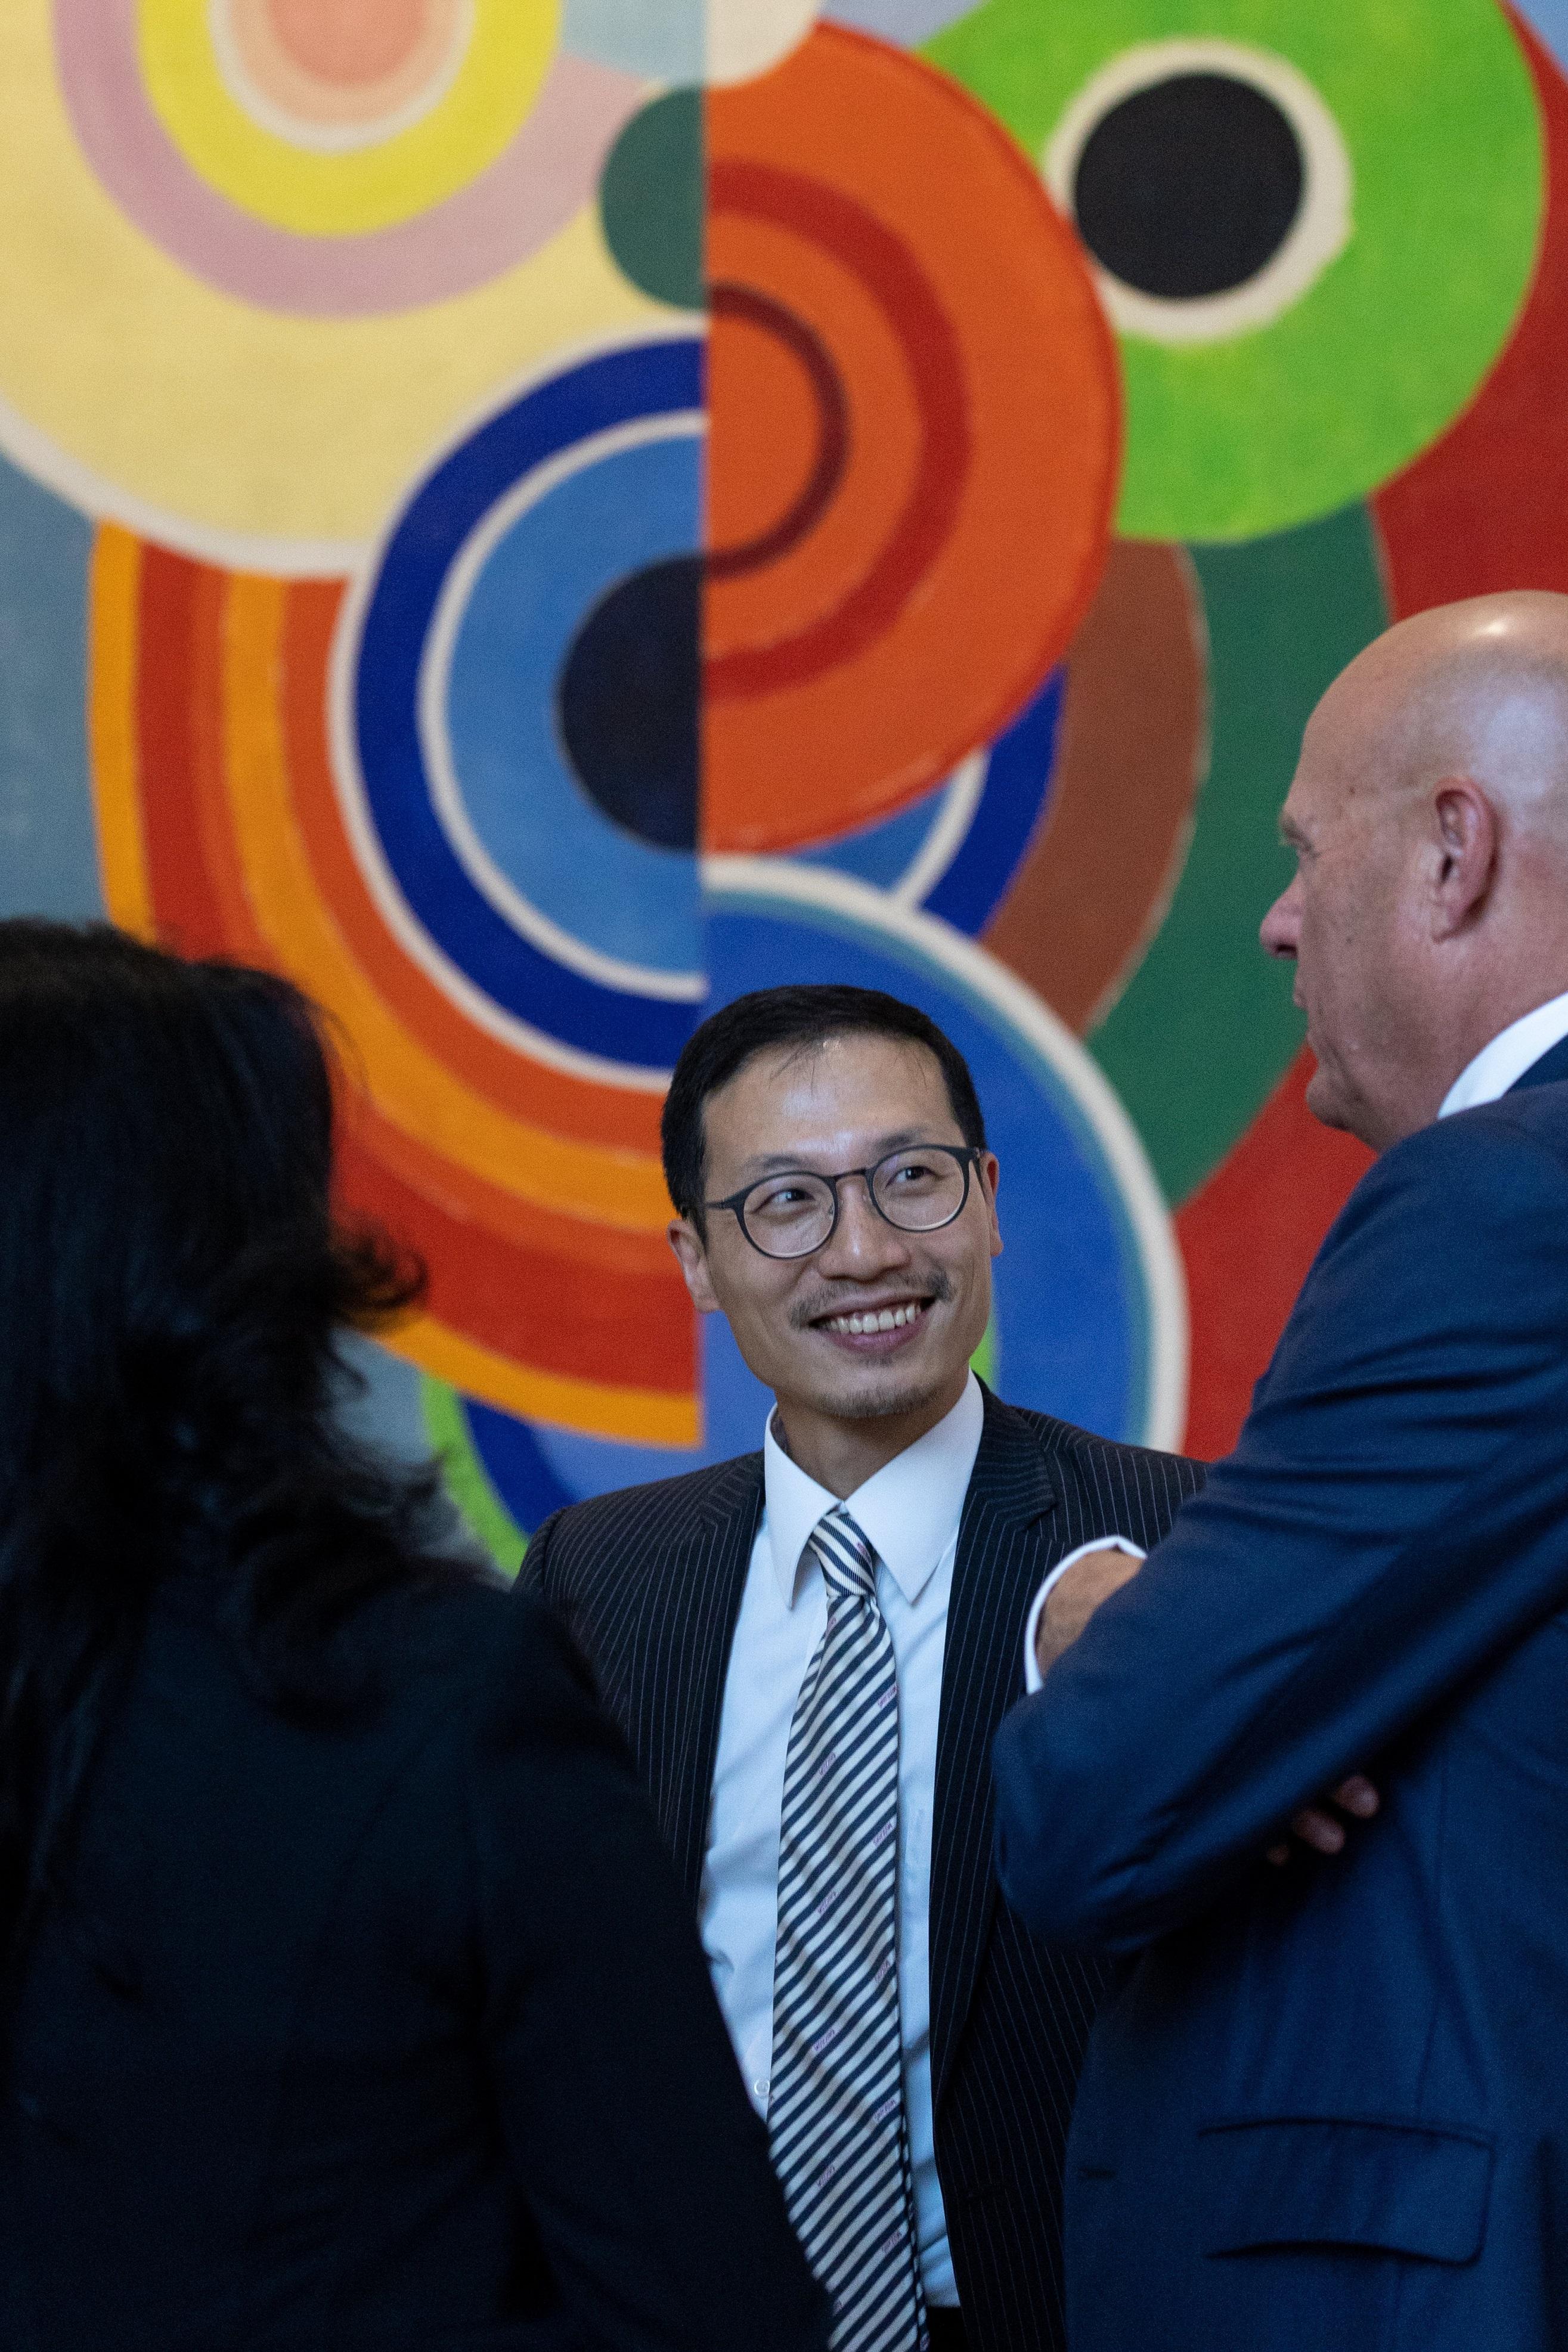 香港貿易發展局歐洲、中亞及以色列首席代表朱耀昌在六月二十七日（巴黎時間）出席在法國巴黎舉行的慶祝香港特別行政區成立二十五周年酒會，與在場賓客交流。香港貿易發展局為活動協辦機構。